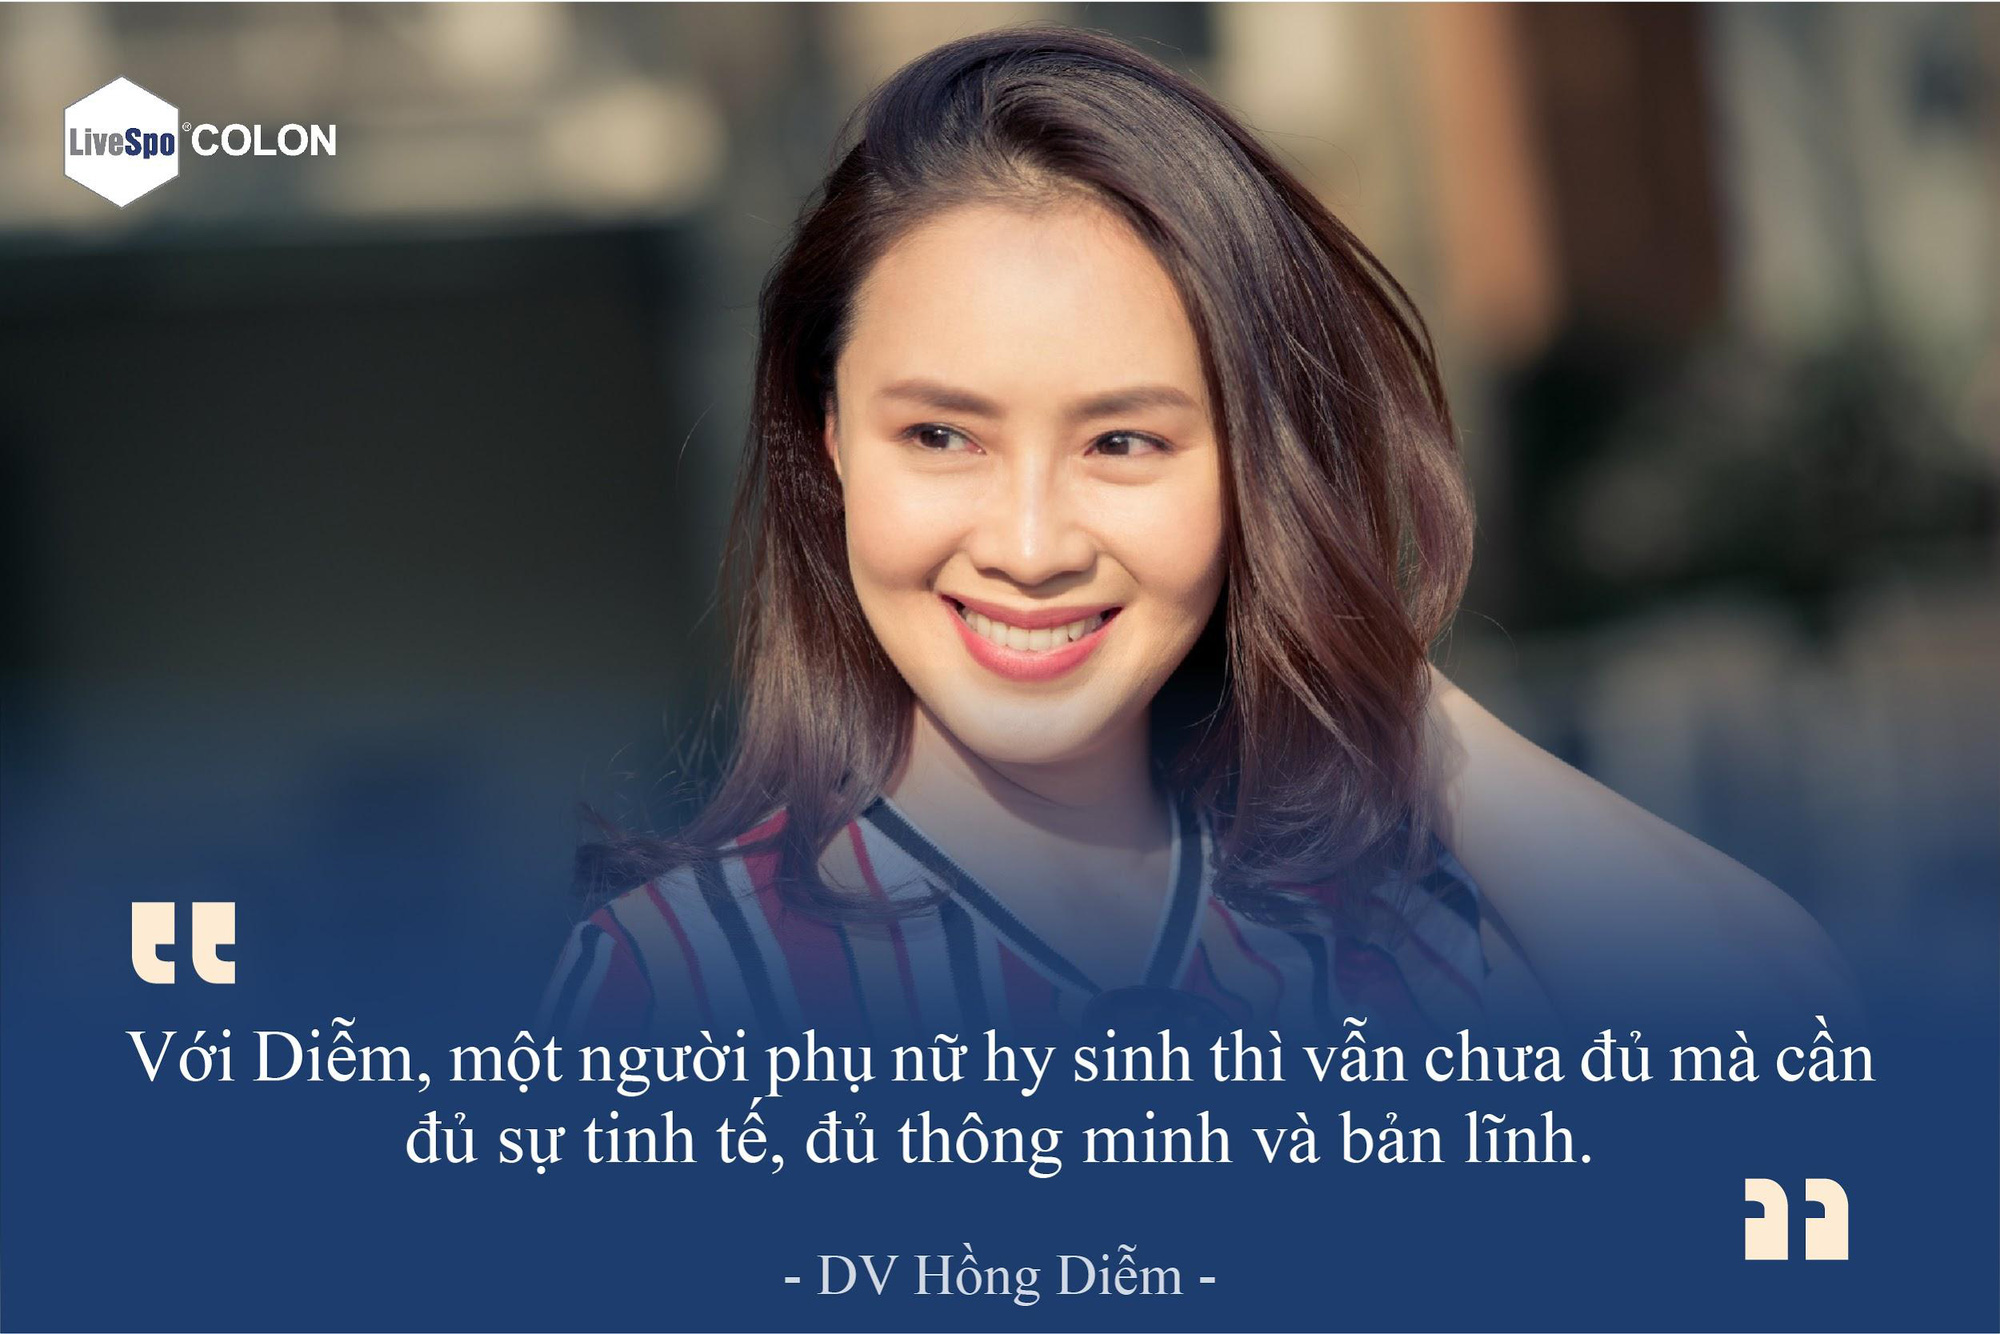 DV Hồng Diễm: Phụ nữ hy sinh thôi là chưa đủ - Ảnh 1.